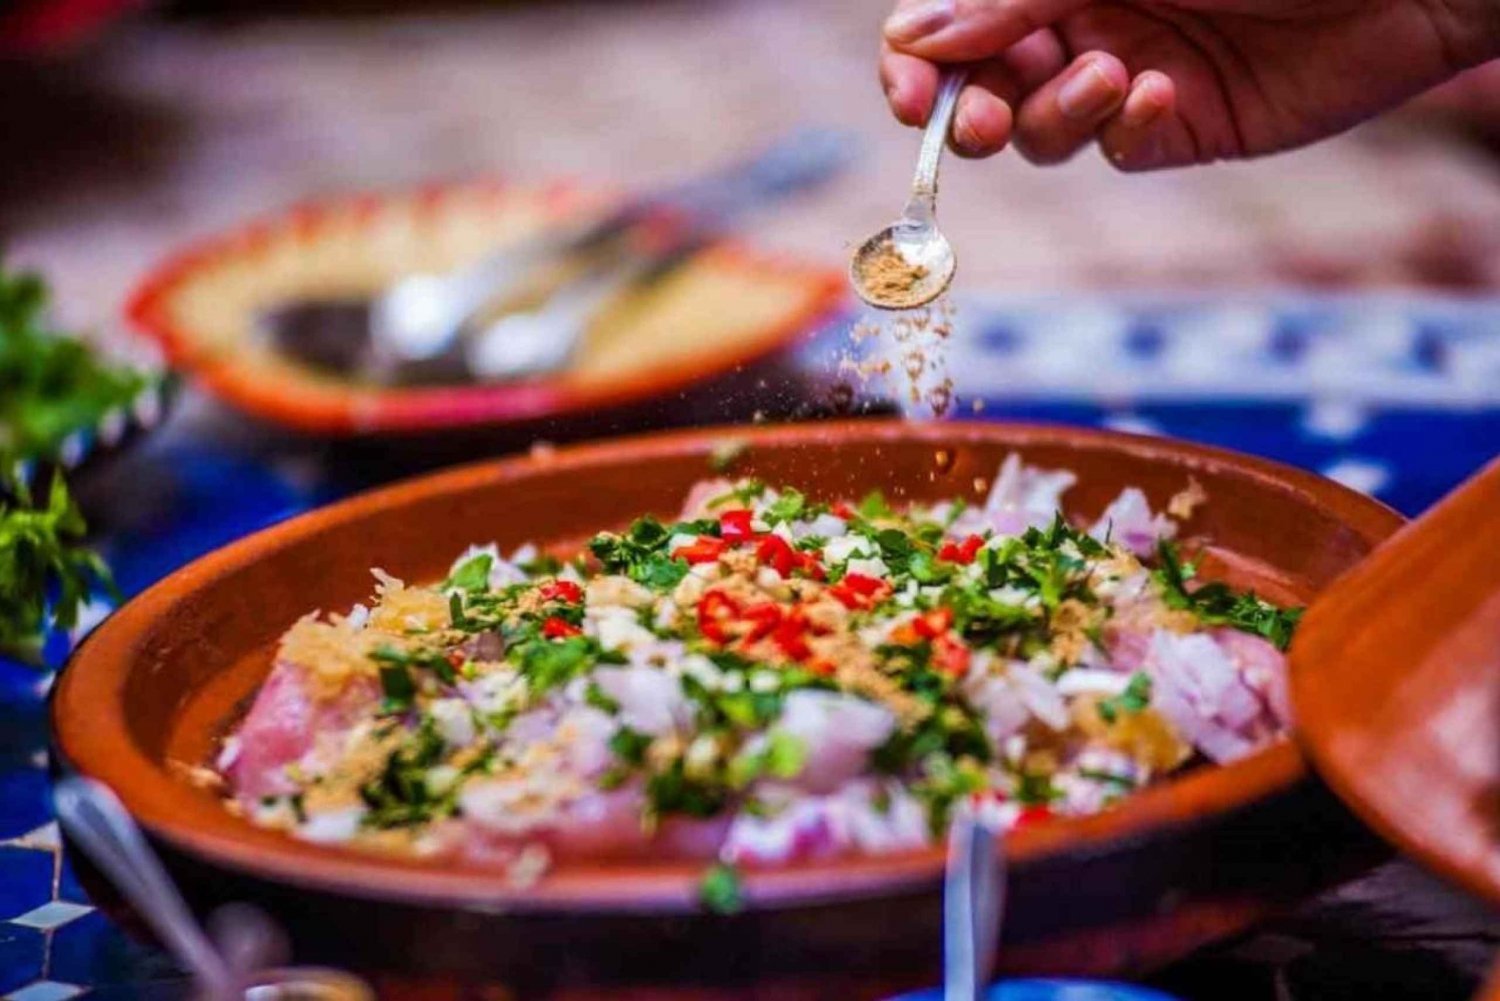 Z Marrakeszu: Zajęcia kulinarne z lokalnym szefem kuchni